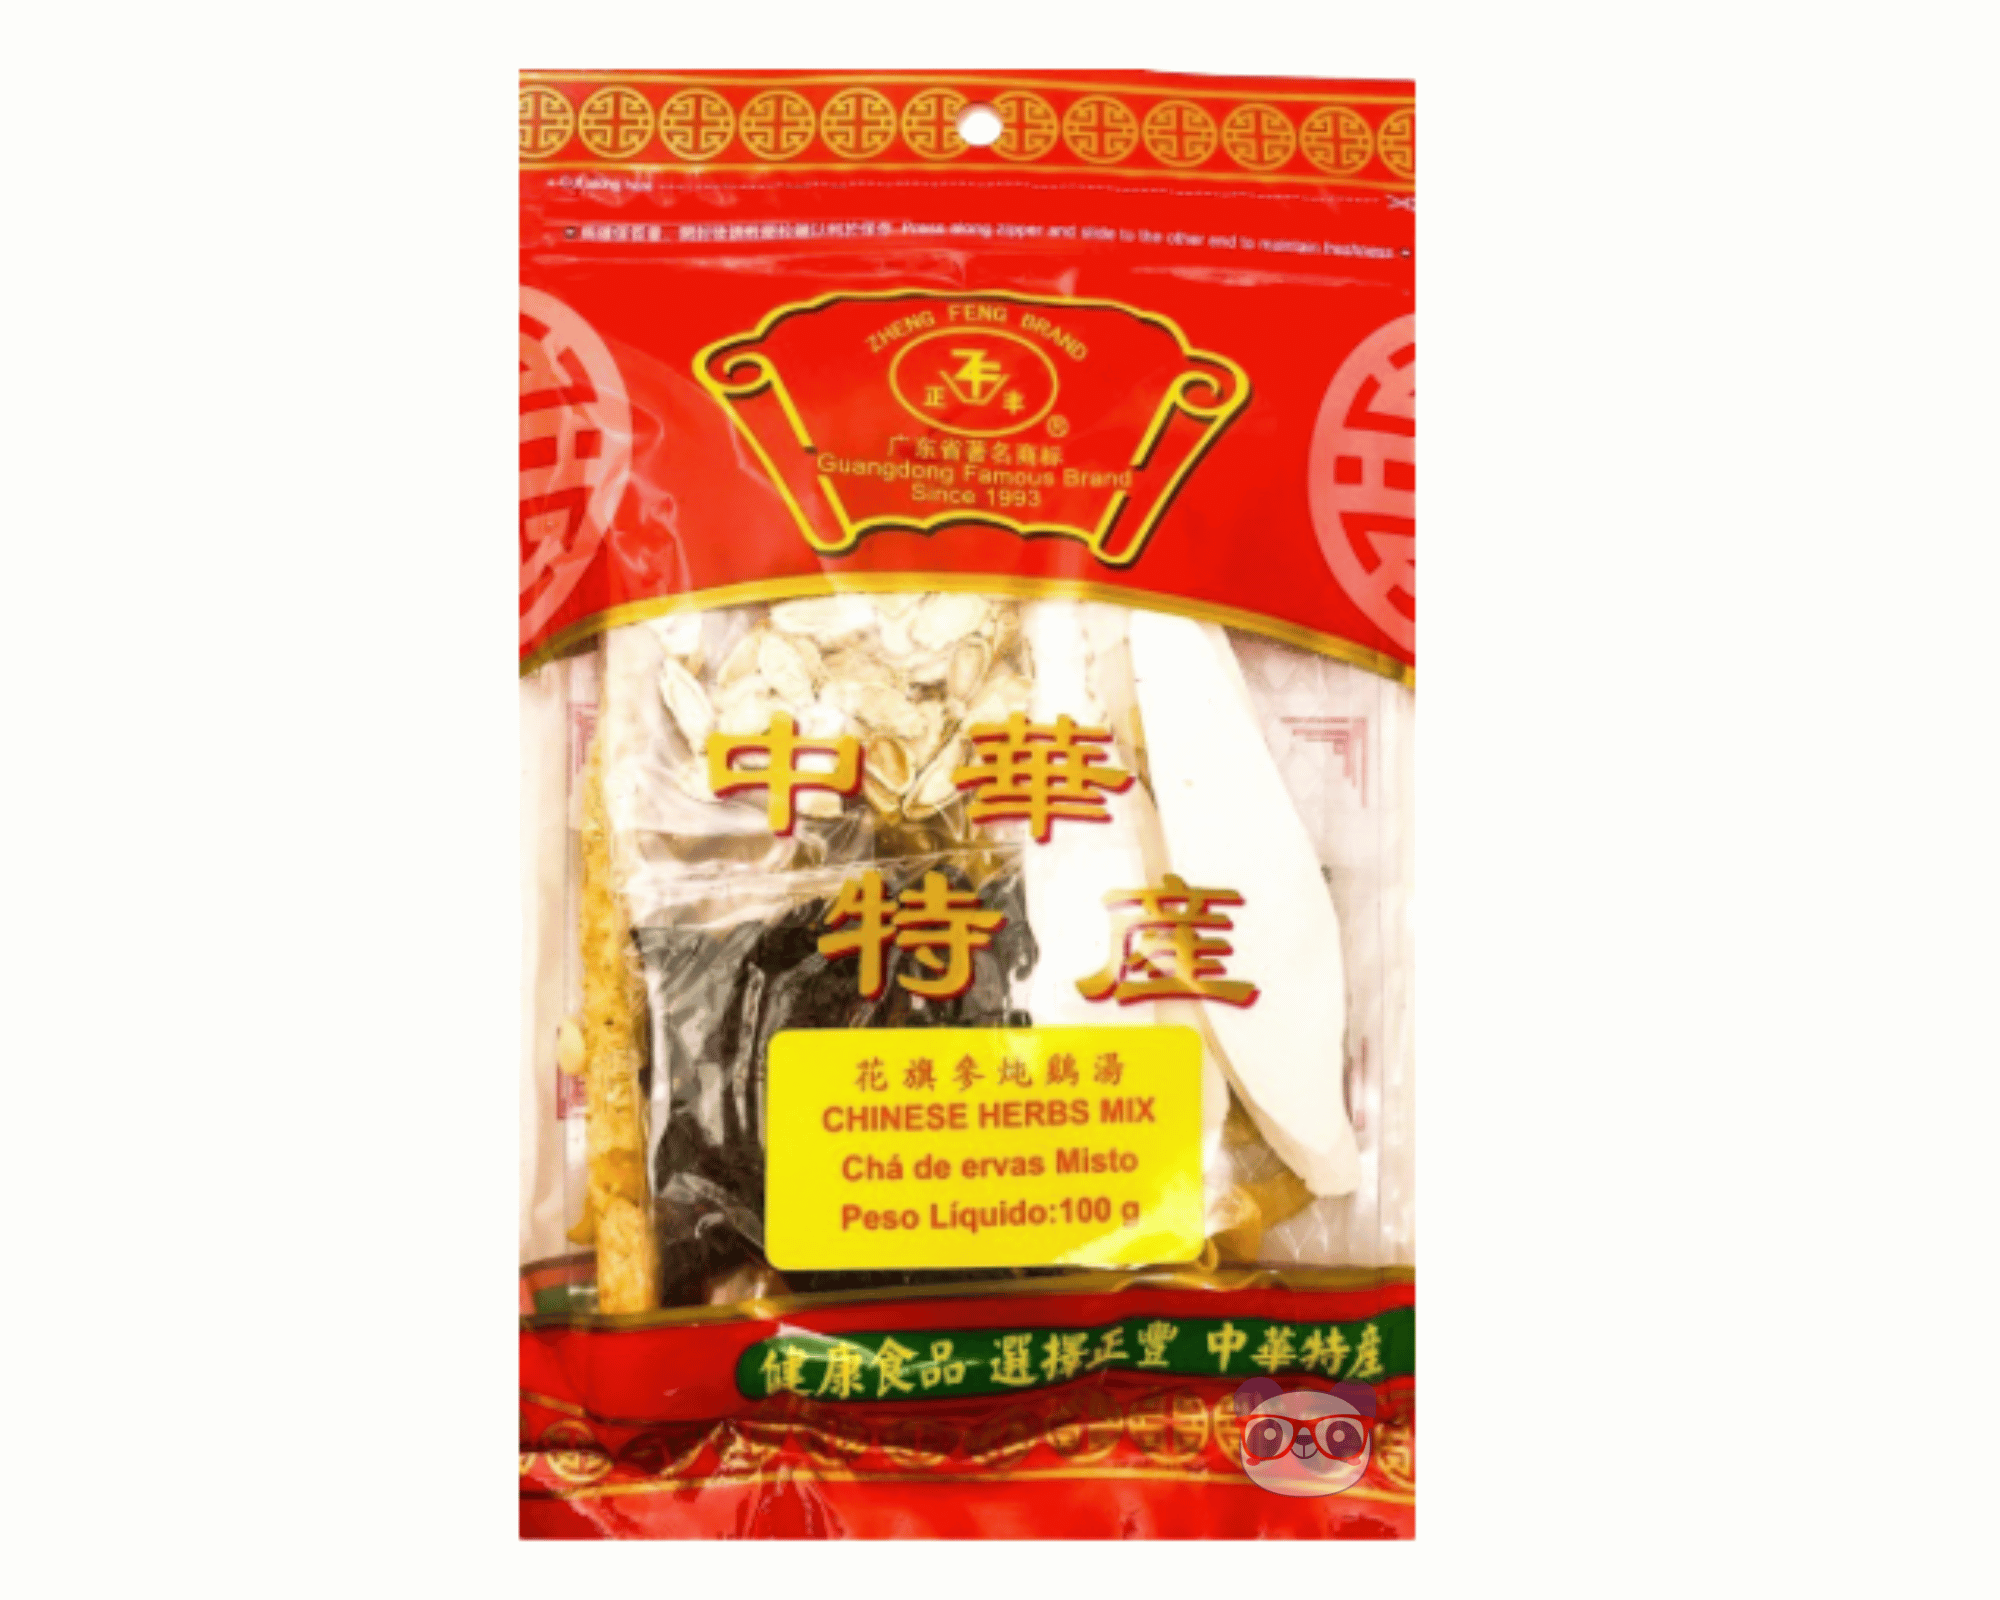 Chá de Mix de Ervas Chinesas - Zheng Feng Brand 100g